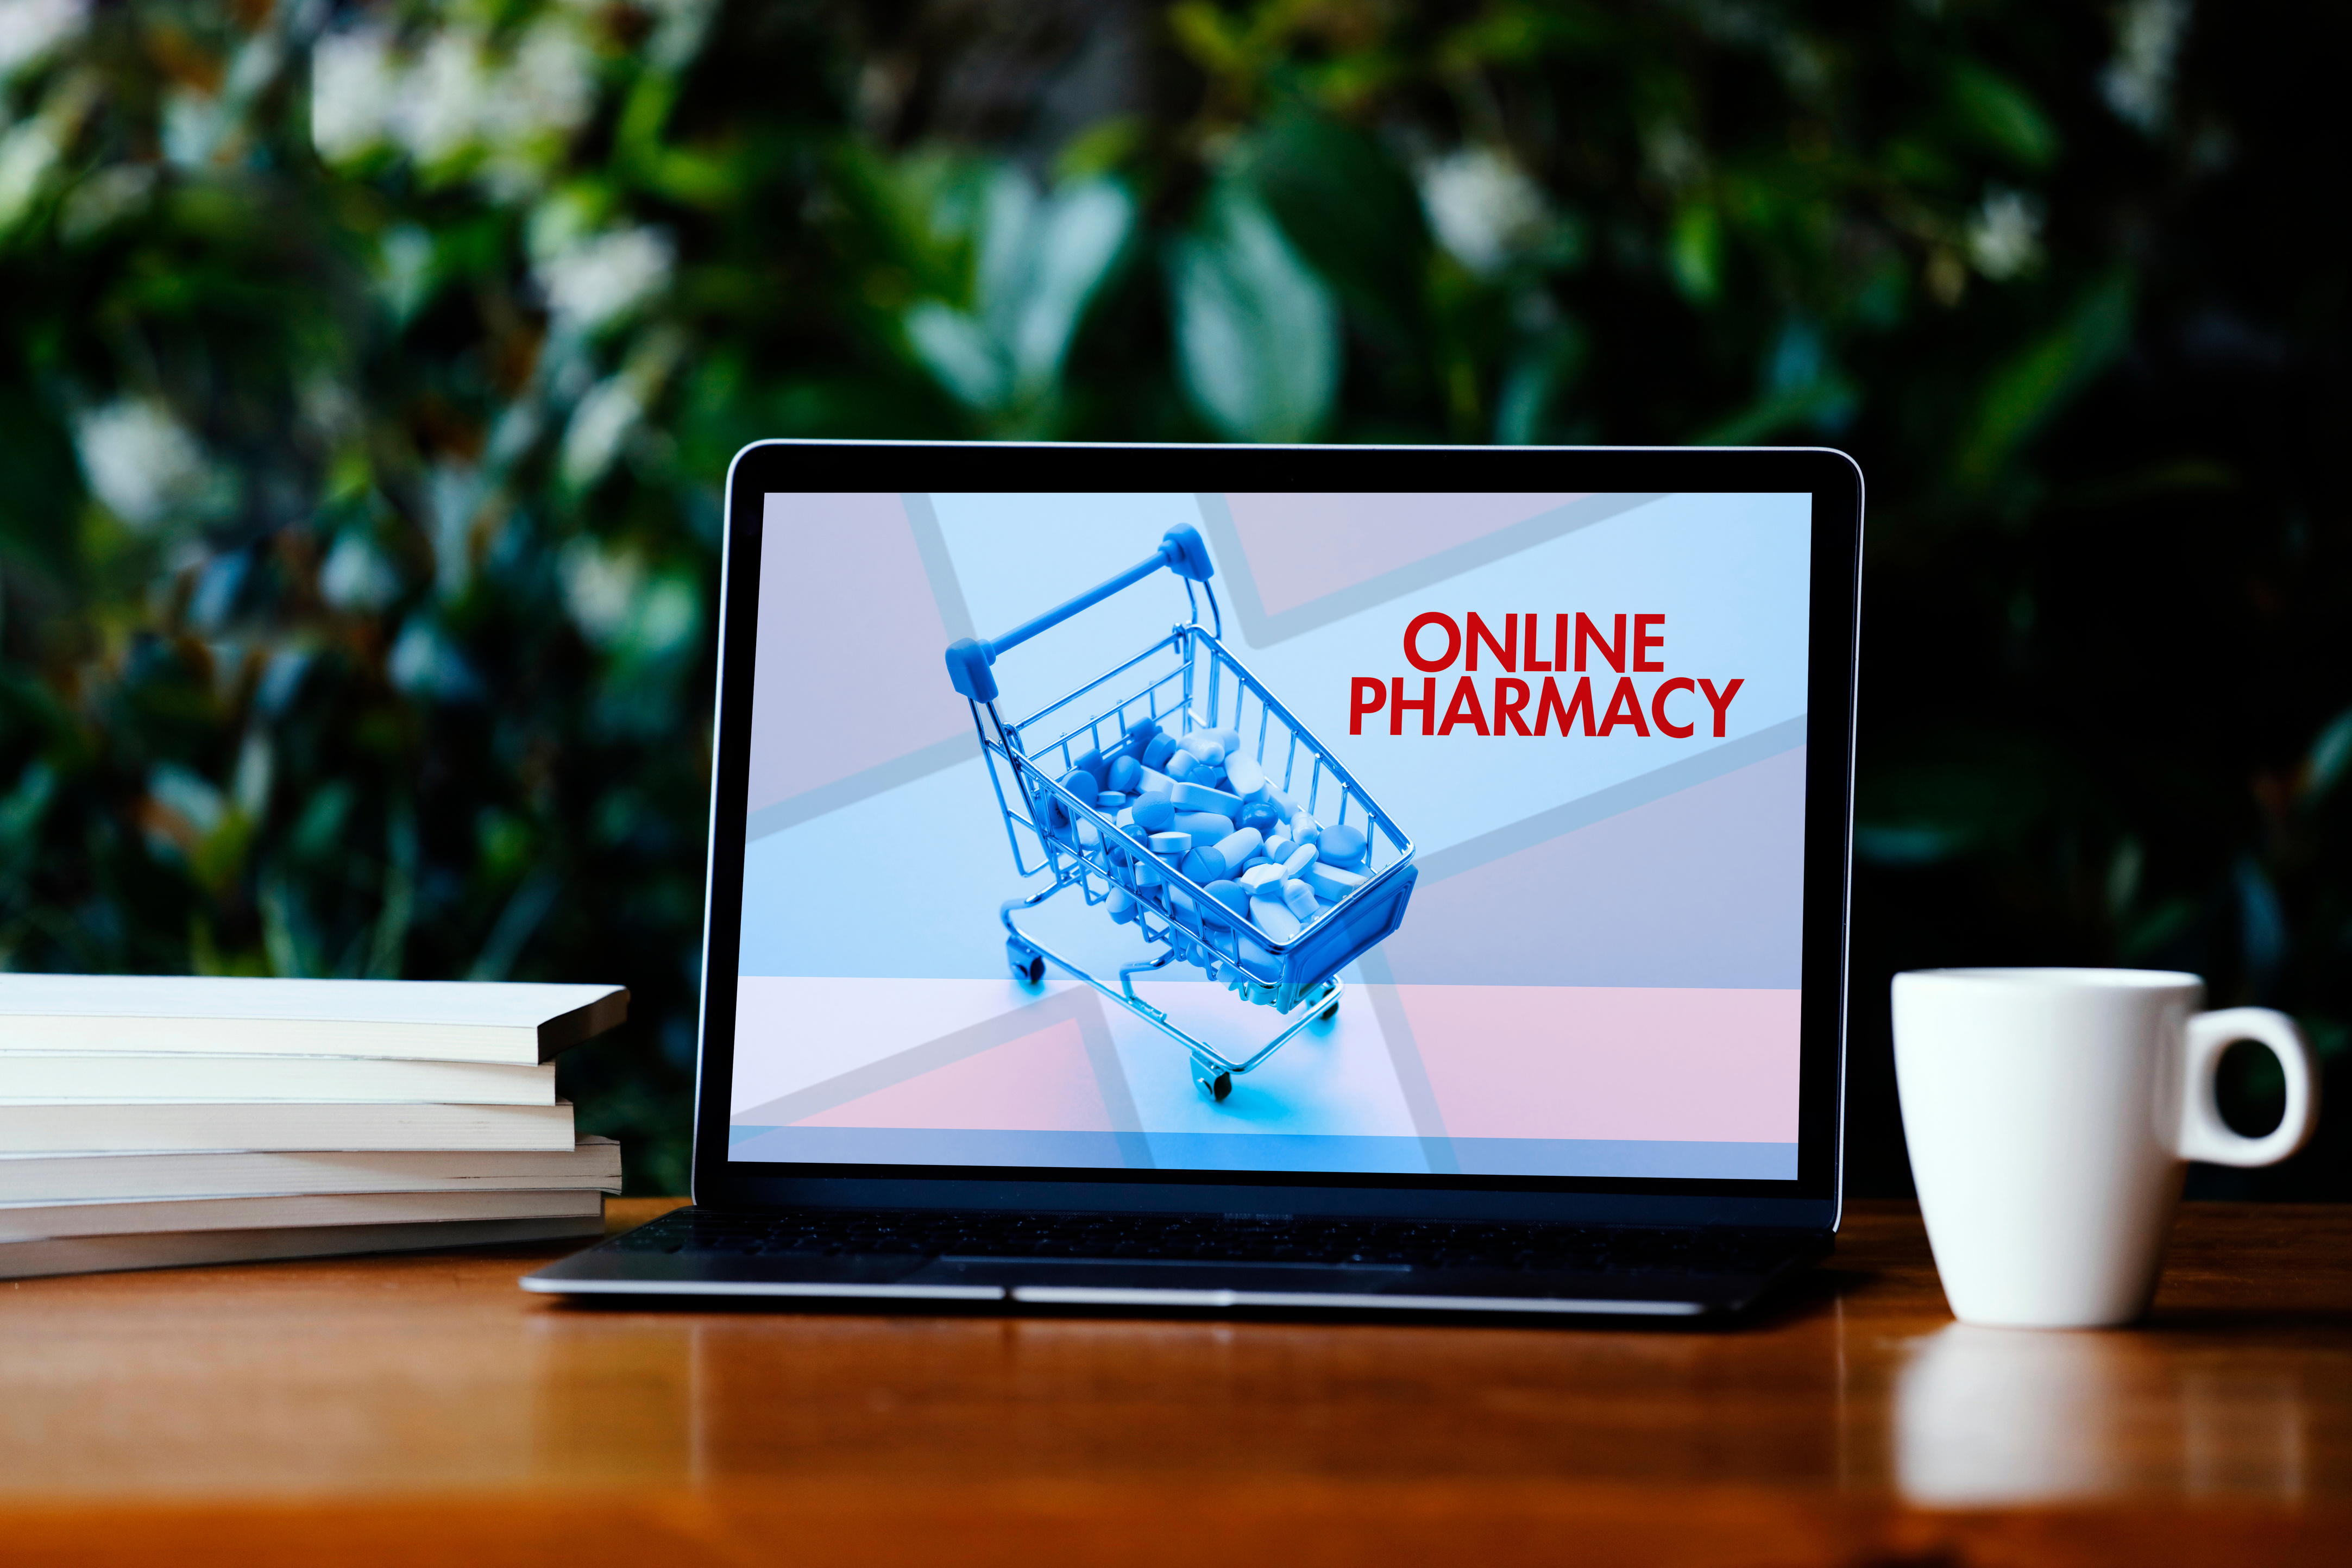 Online pharmacy concept